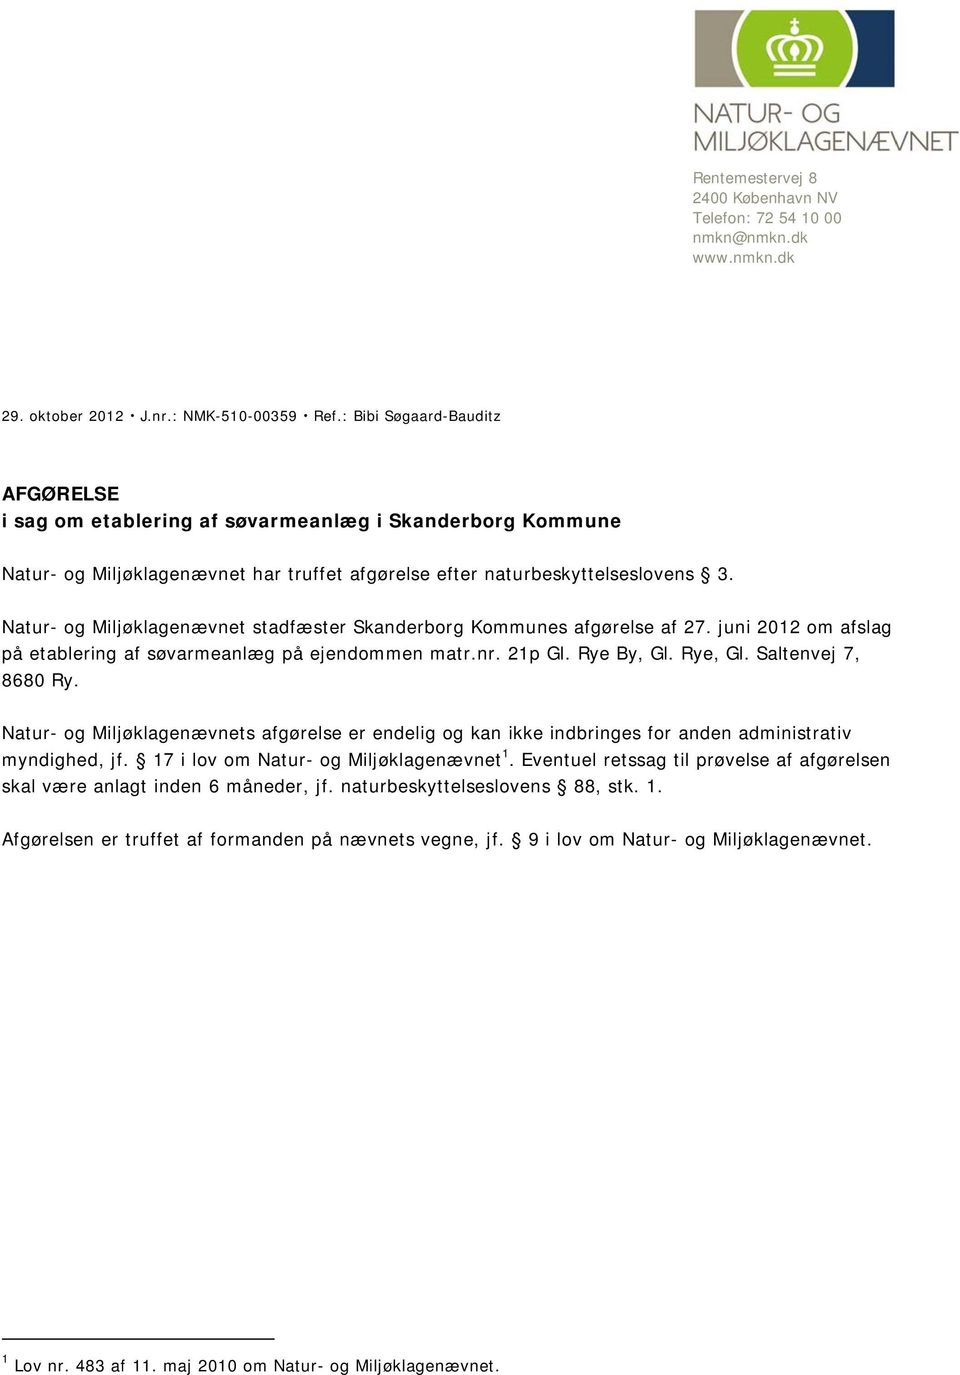 Natur- og Miljøklagenævnet stadfæster Skanderborg Kommunes afgørelse af 27. juni 2012 om afslag på etablering af søvarmeanlæg på ejendommen matr.nr. 21p Gl. Rye By, Gl. Rye, Gl. Saltenvej 7, 8680 Ry.